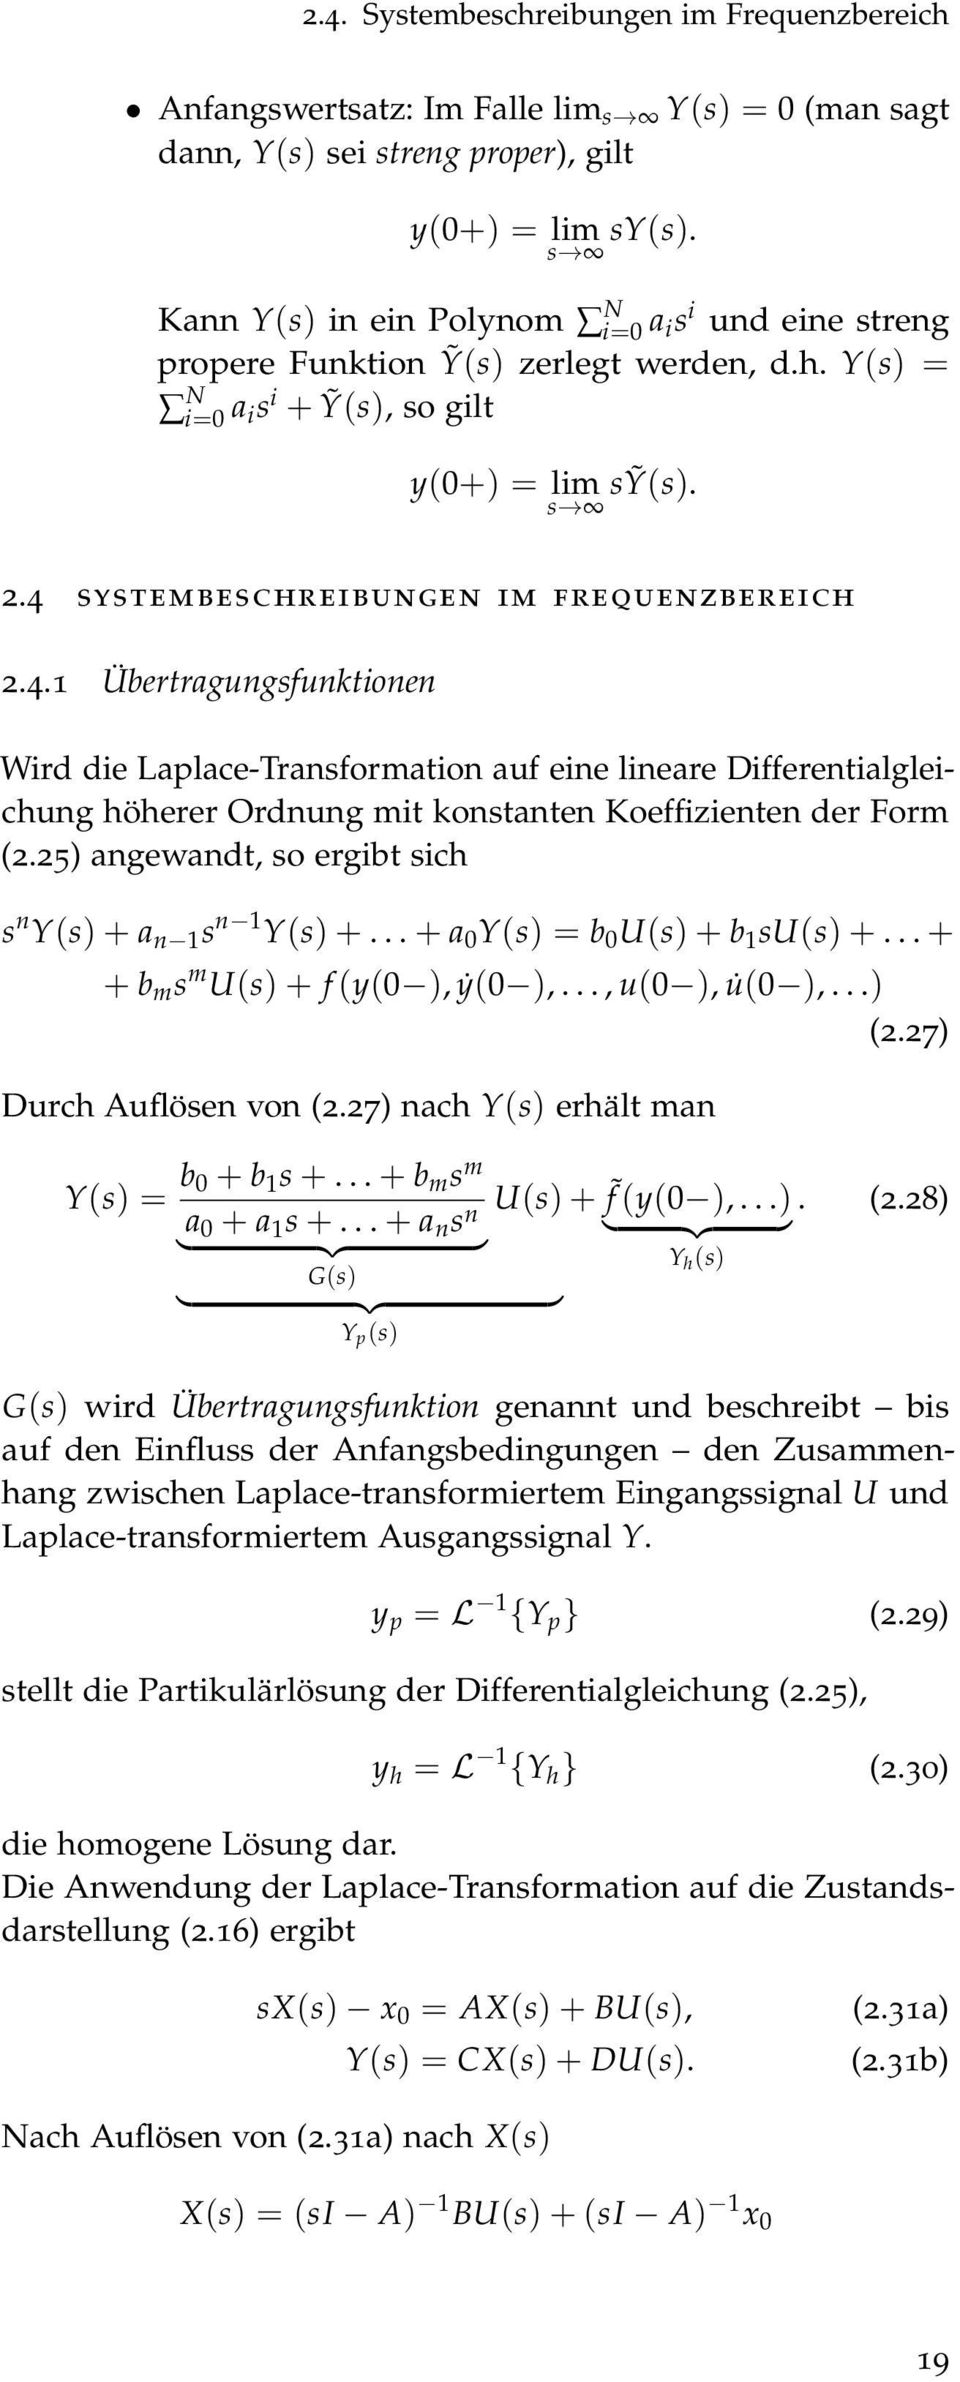 systembeschreibungen im frequenzbereich 2.4. Übertragungsfunktionen Wird die Laplace-Transformation auf eine lineare Differentialgleichung höherer Ordnung mit konstanten Koeffizienten der Form (2.